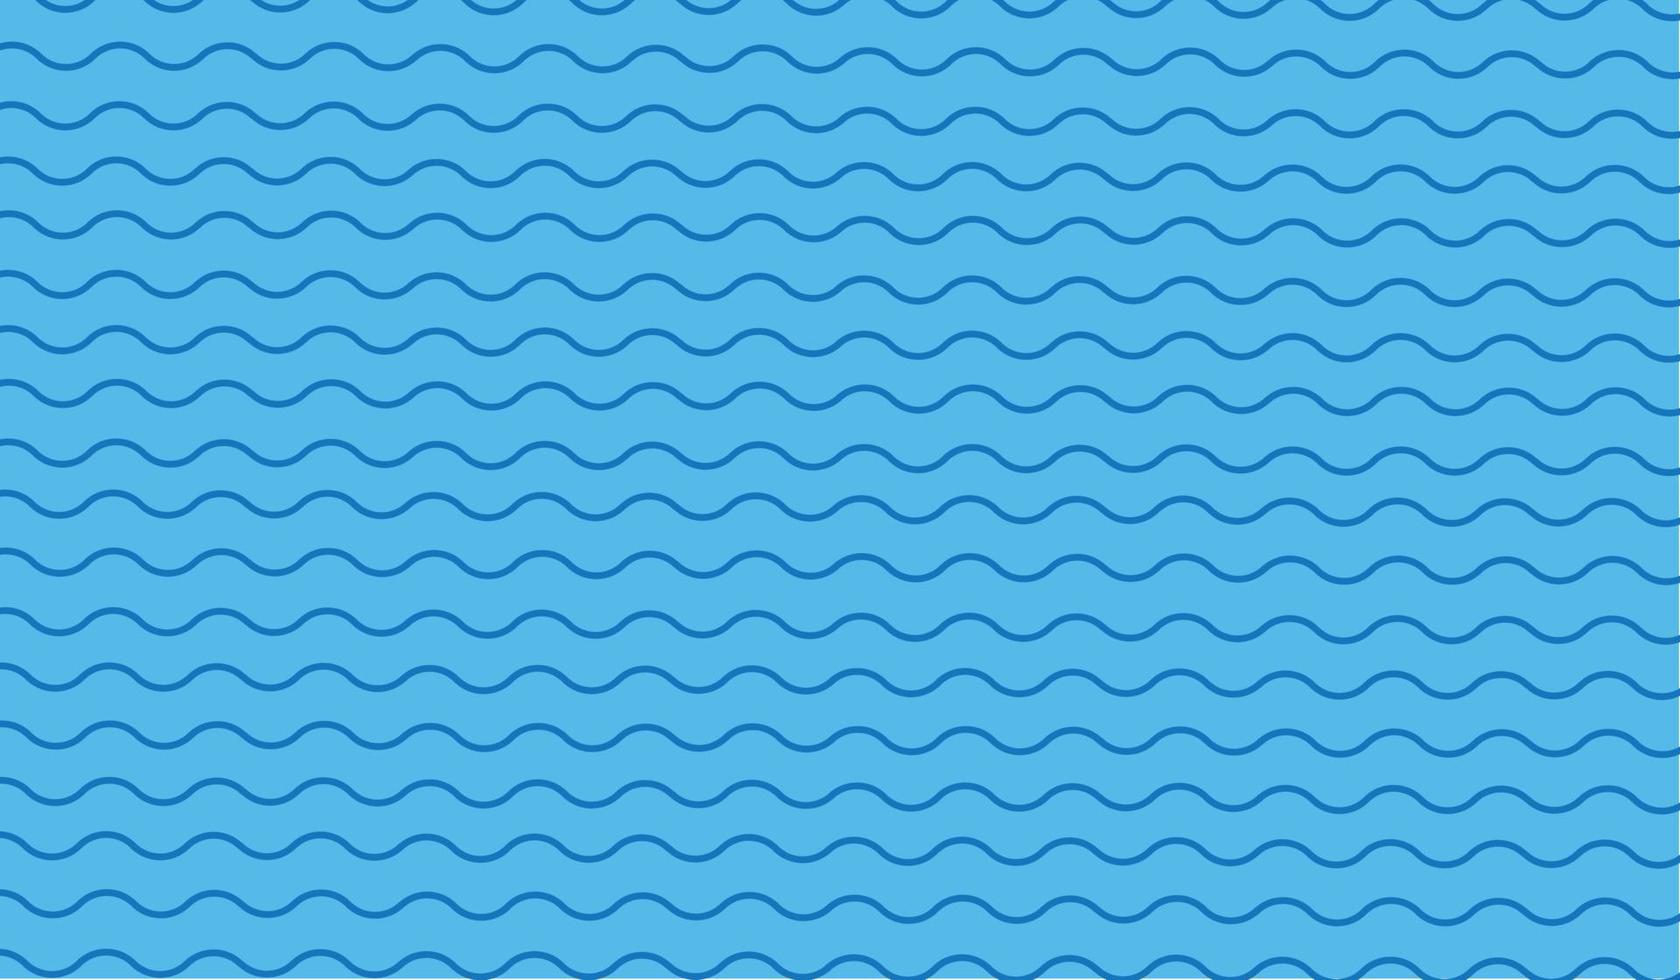 blå vatten Vinka linje mönster bakgrund. vektor illustration.